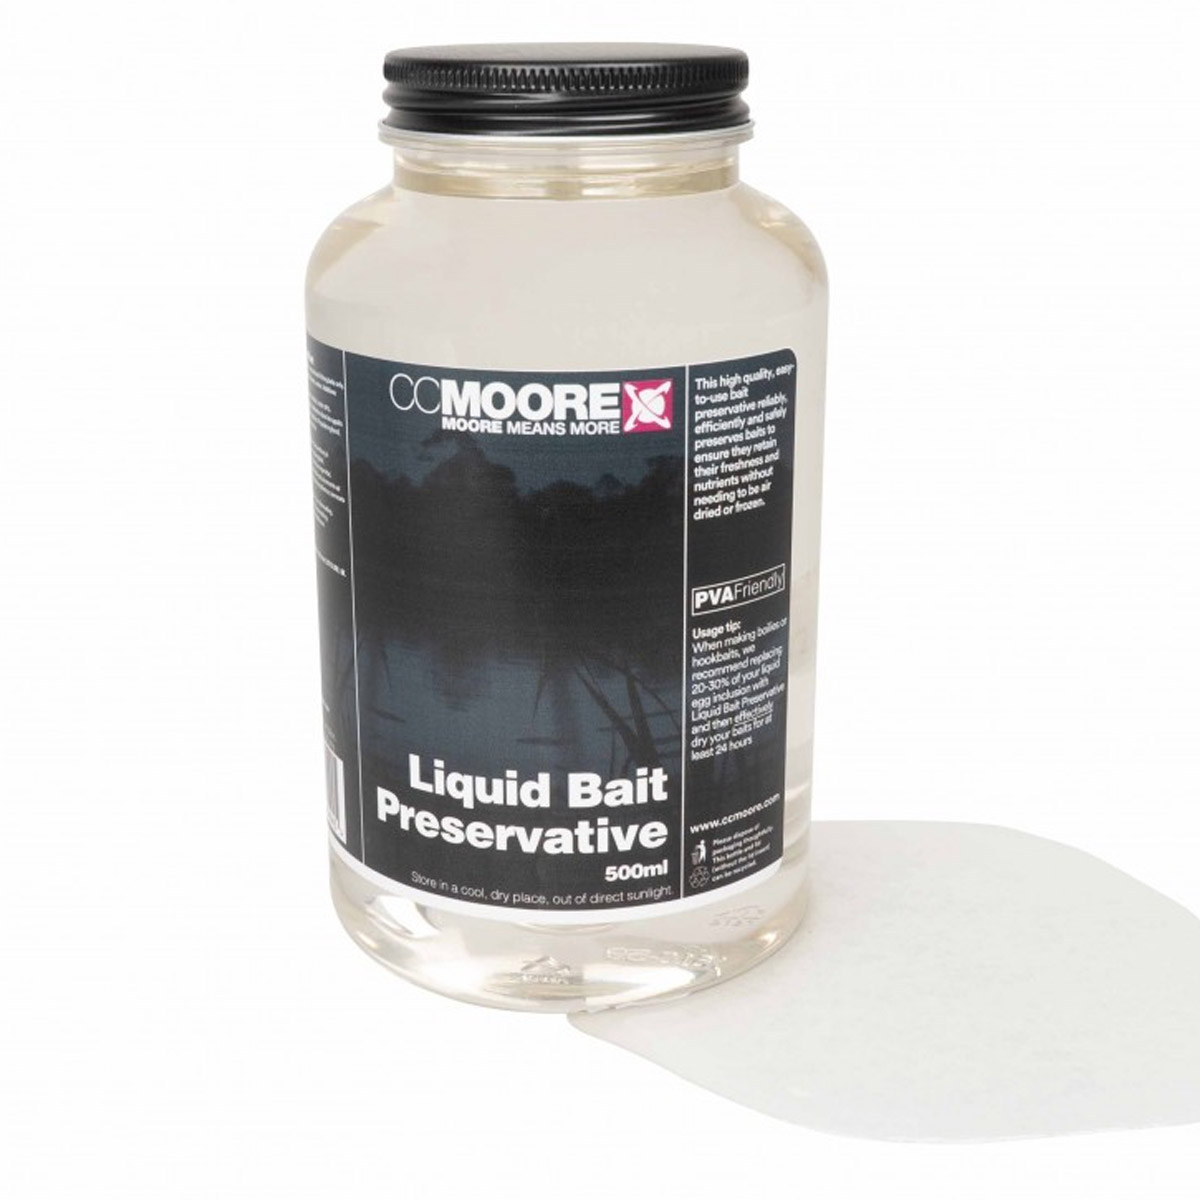 Cc Moore Liquid Bait Preservative 500ml 